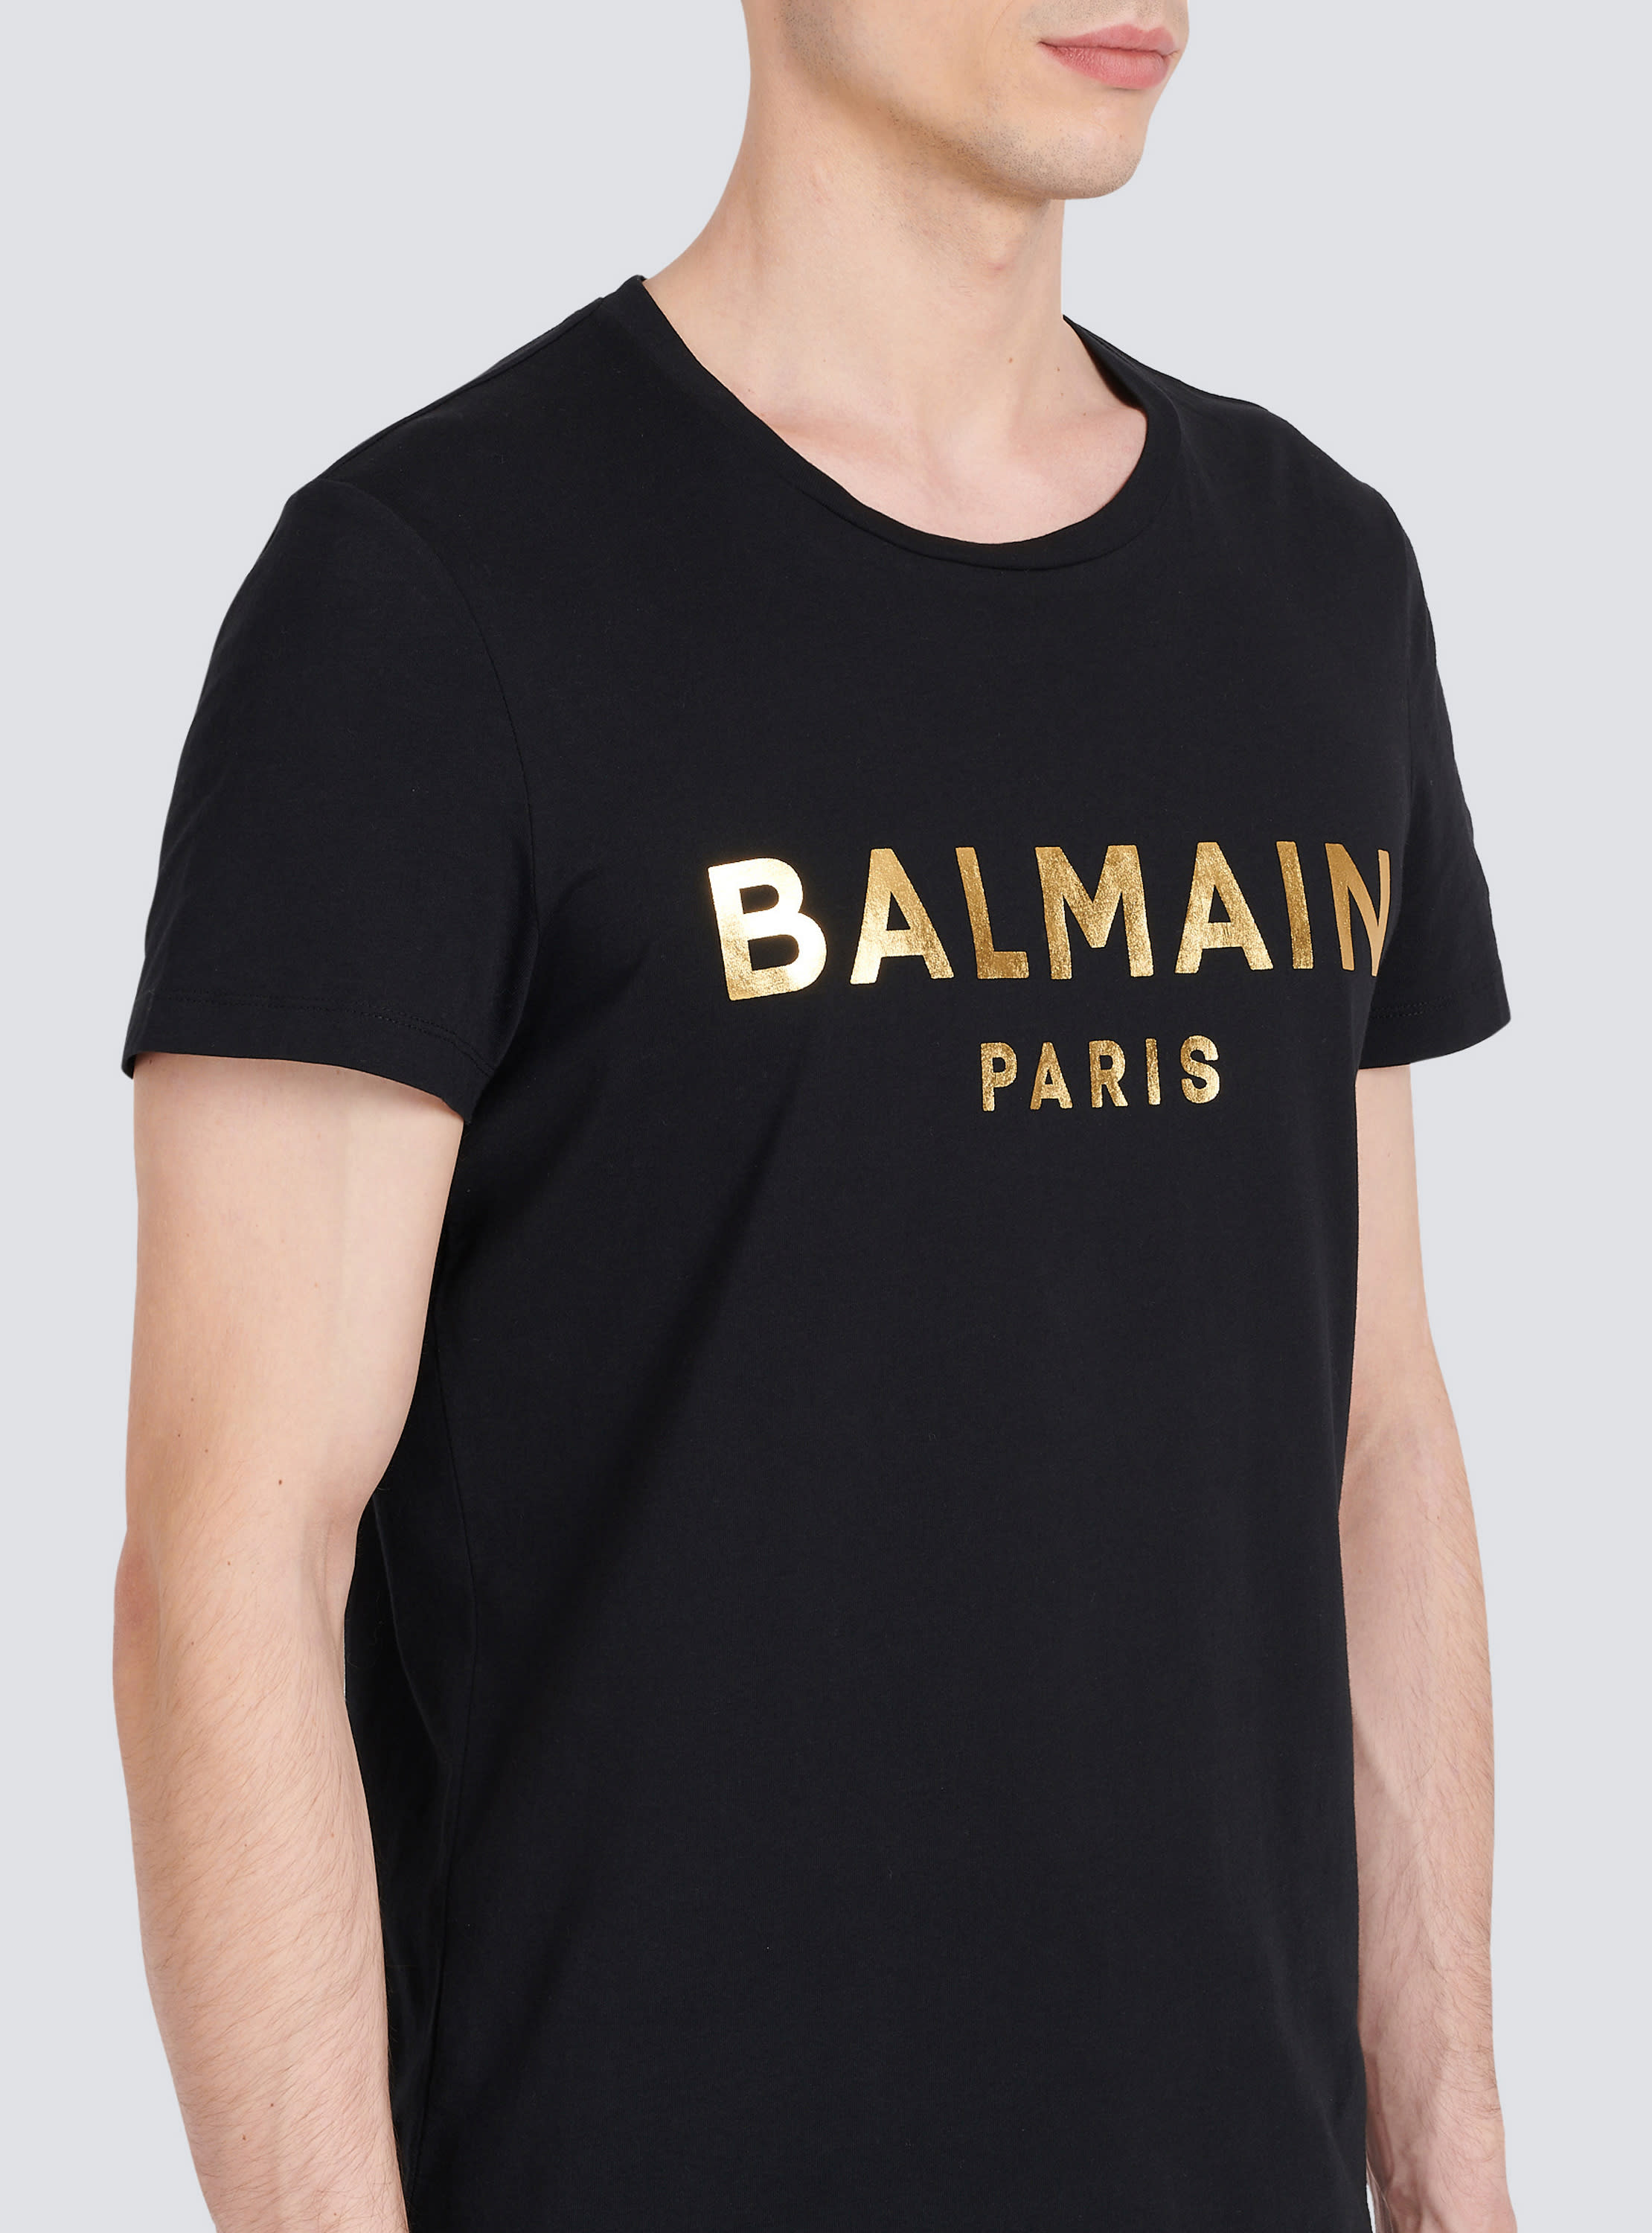 BALMAIN tシャツ ロゴファッション